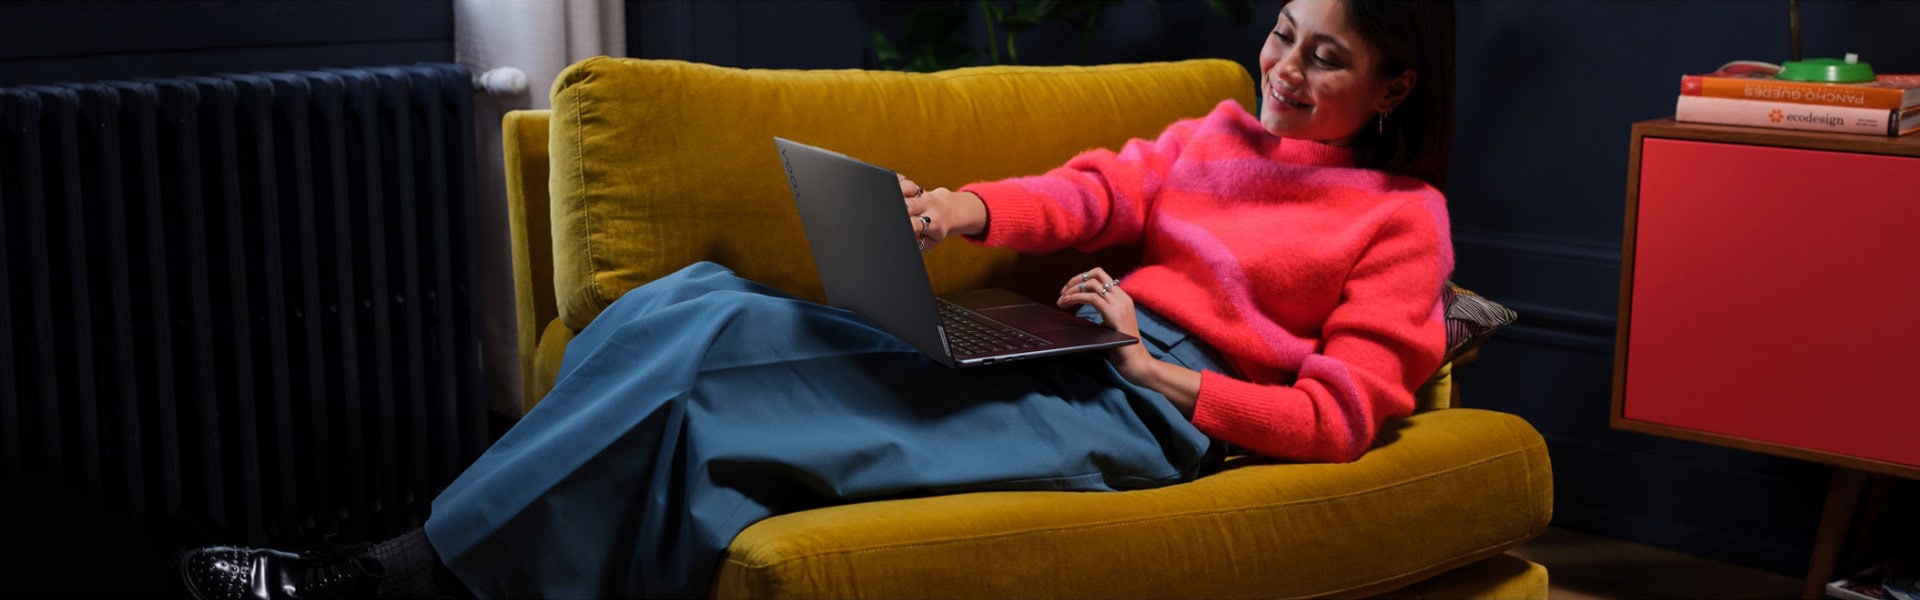 Женщина, удобно расположившаяся в большом кресле с ноутбуком Lenovo Yoga на коленях